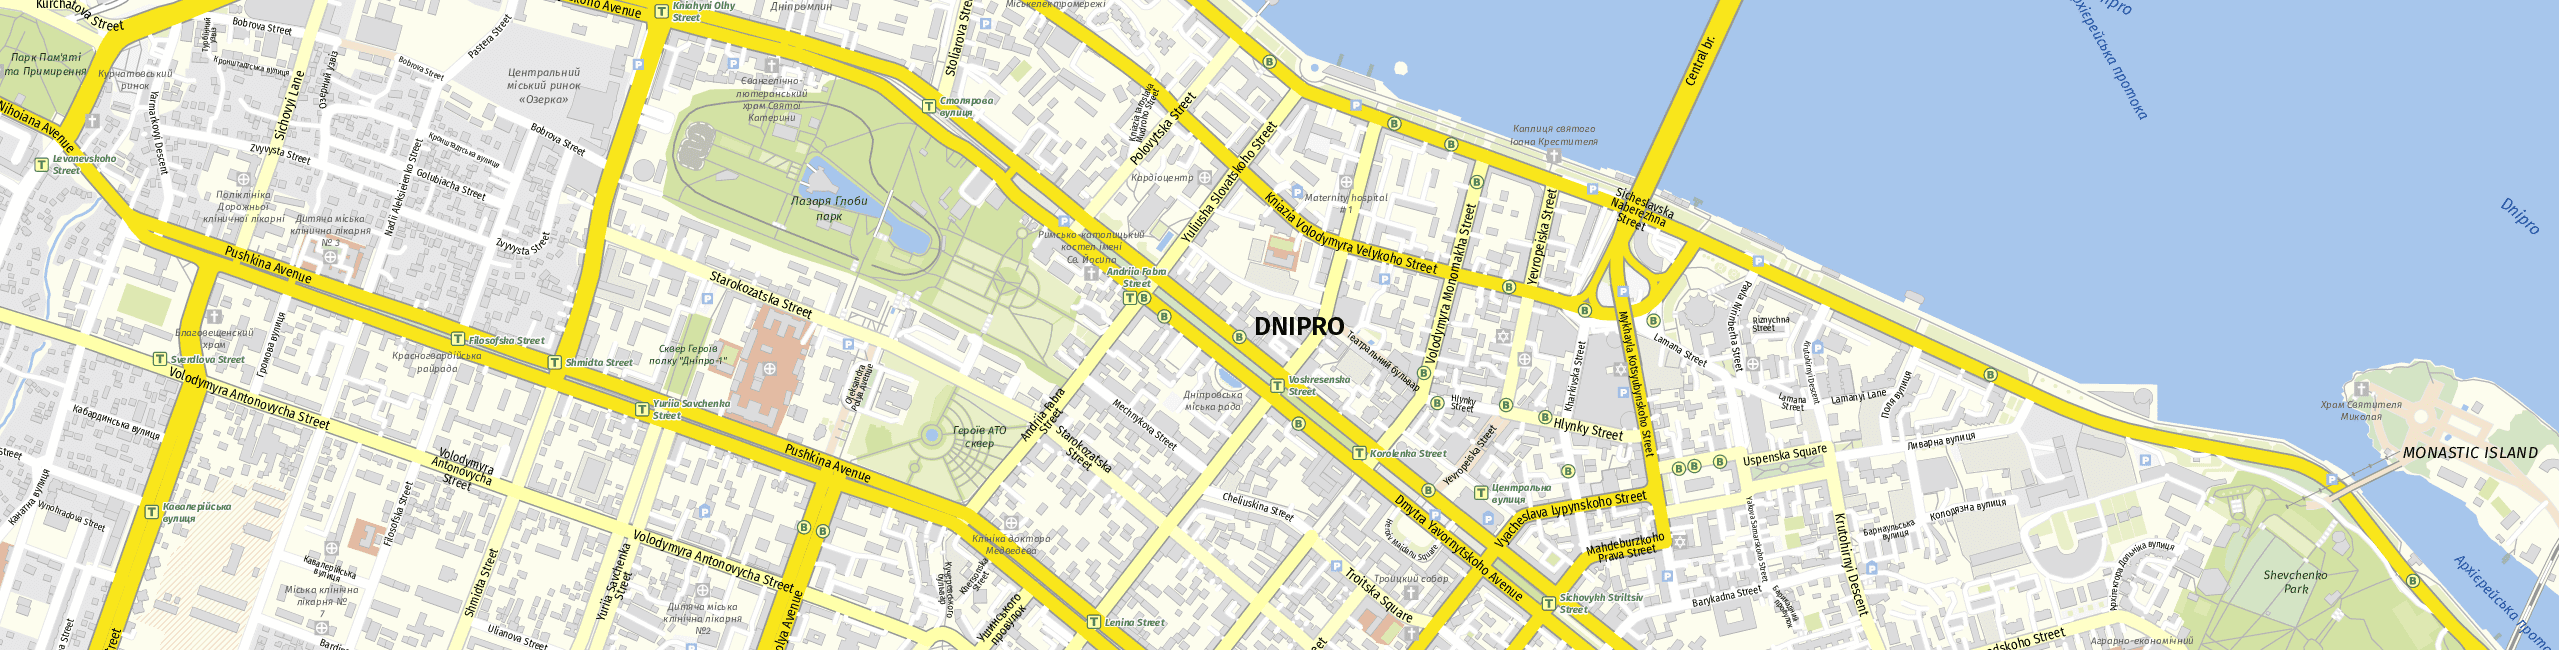 Stadtplan Dnipro zum Downloaden.